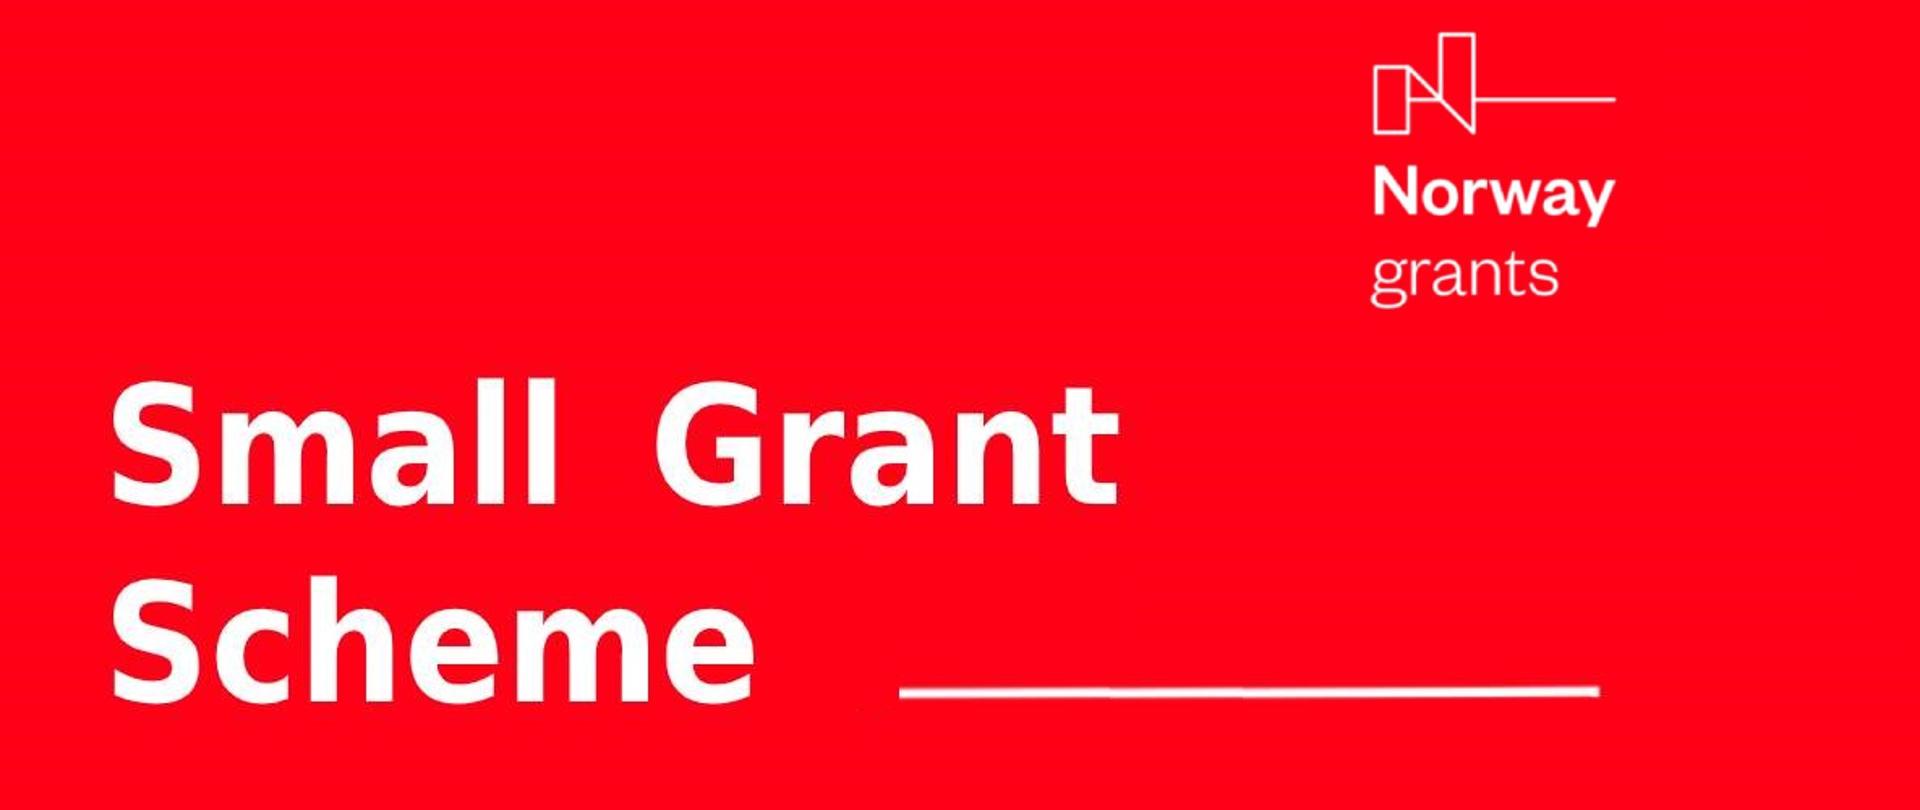 Small Grant Scheme